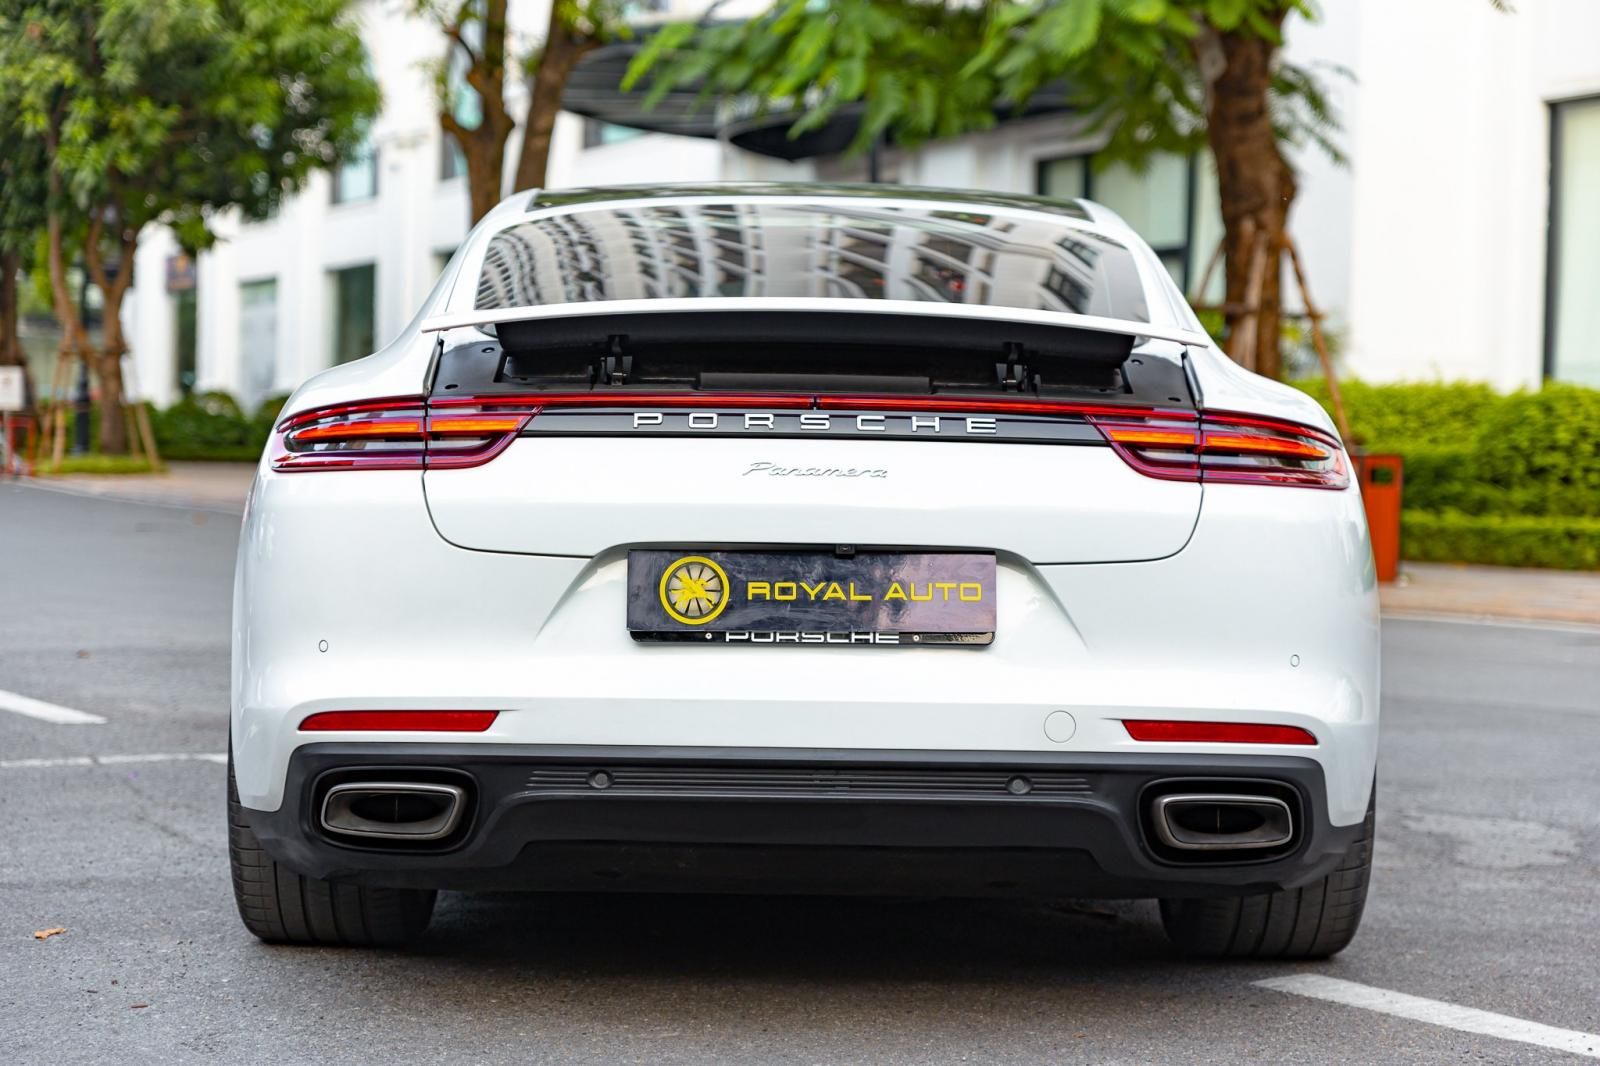 Porsche Panamera 2018 - Hải Phòng - Giao xe ngay - Hỗ trợ bank 70%